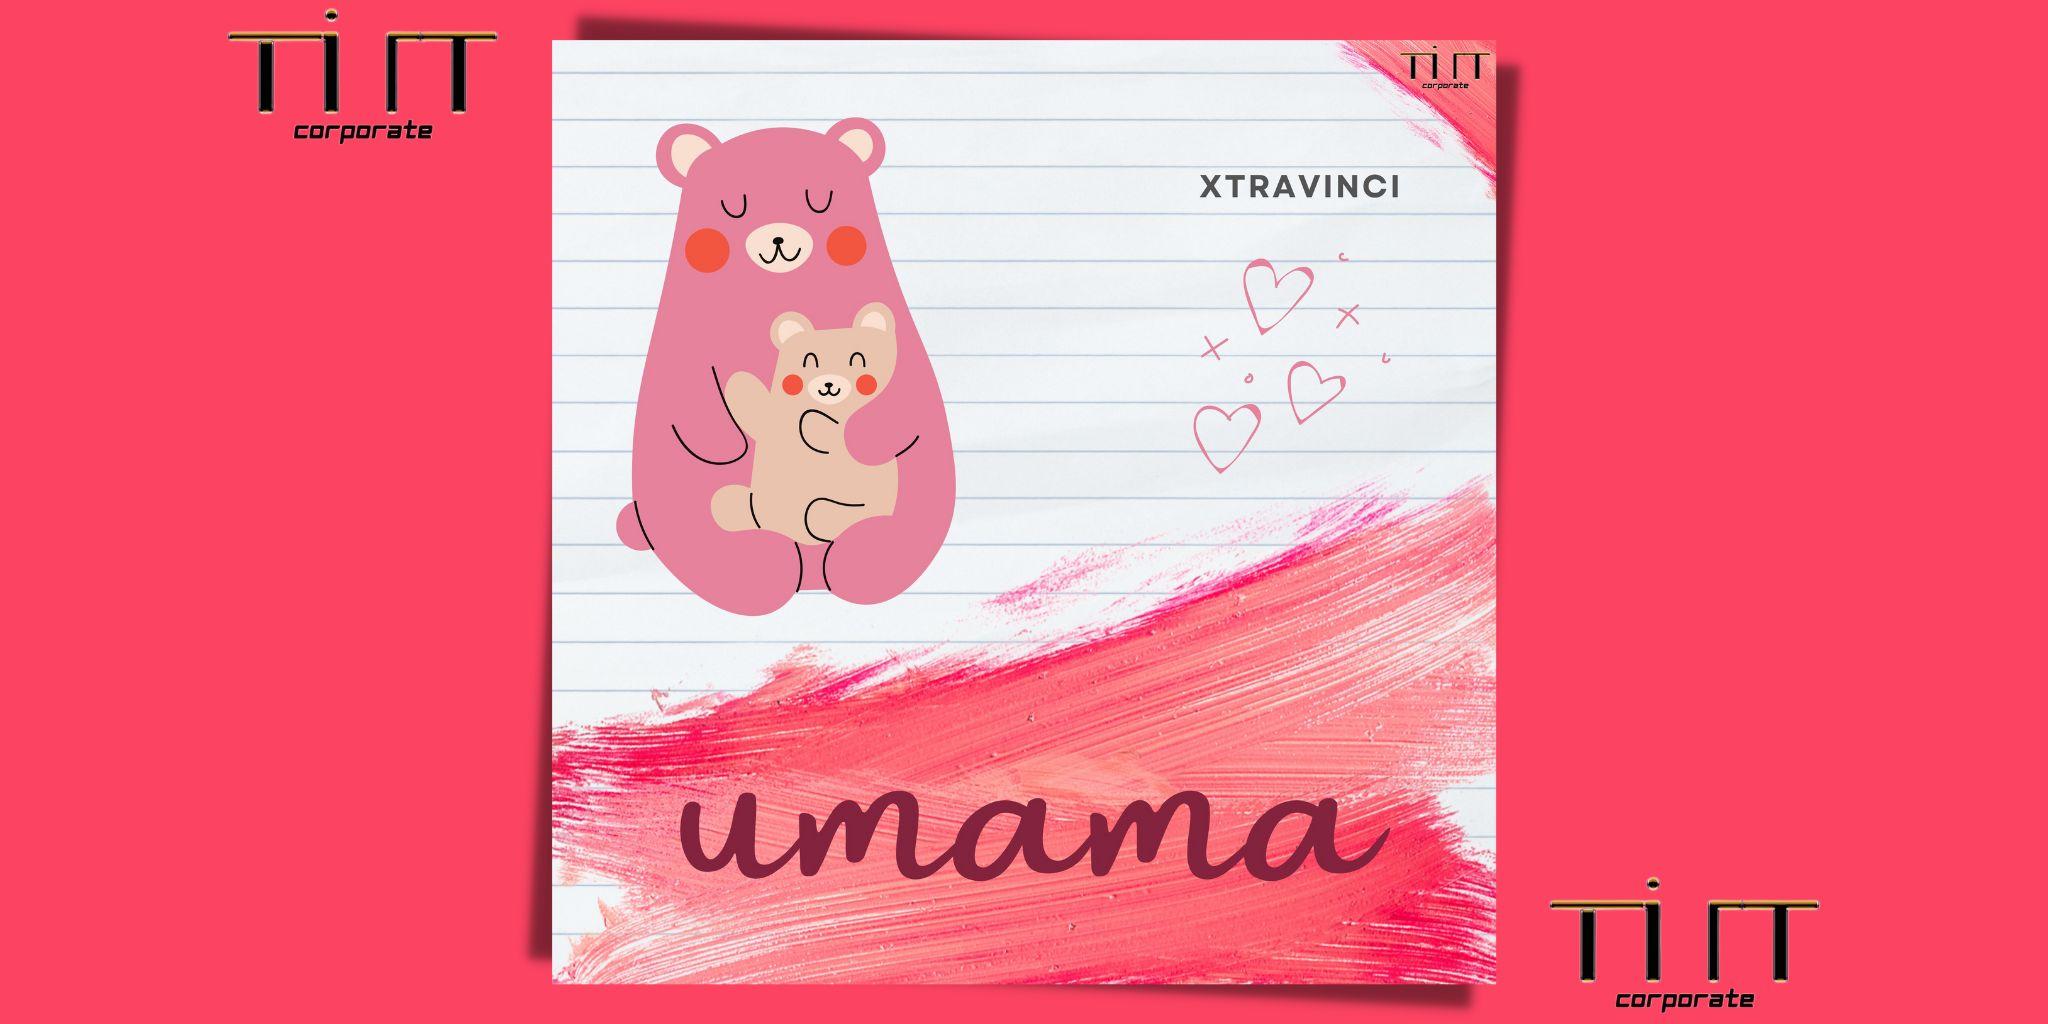 UMAMA è il nuovo singolo di XTRAVINCI